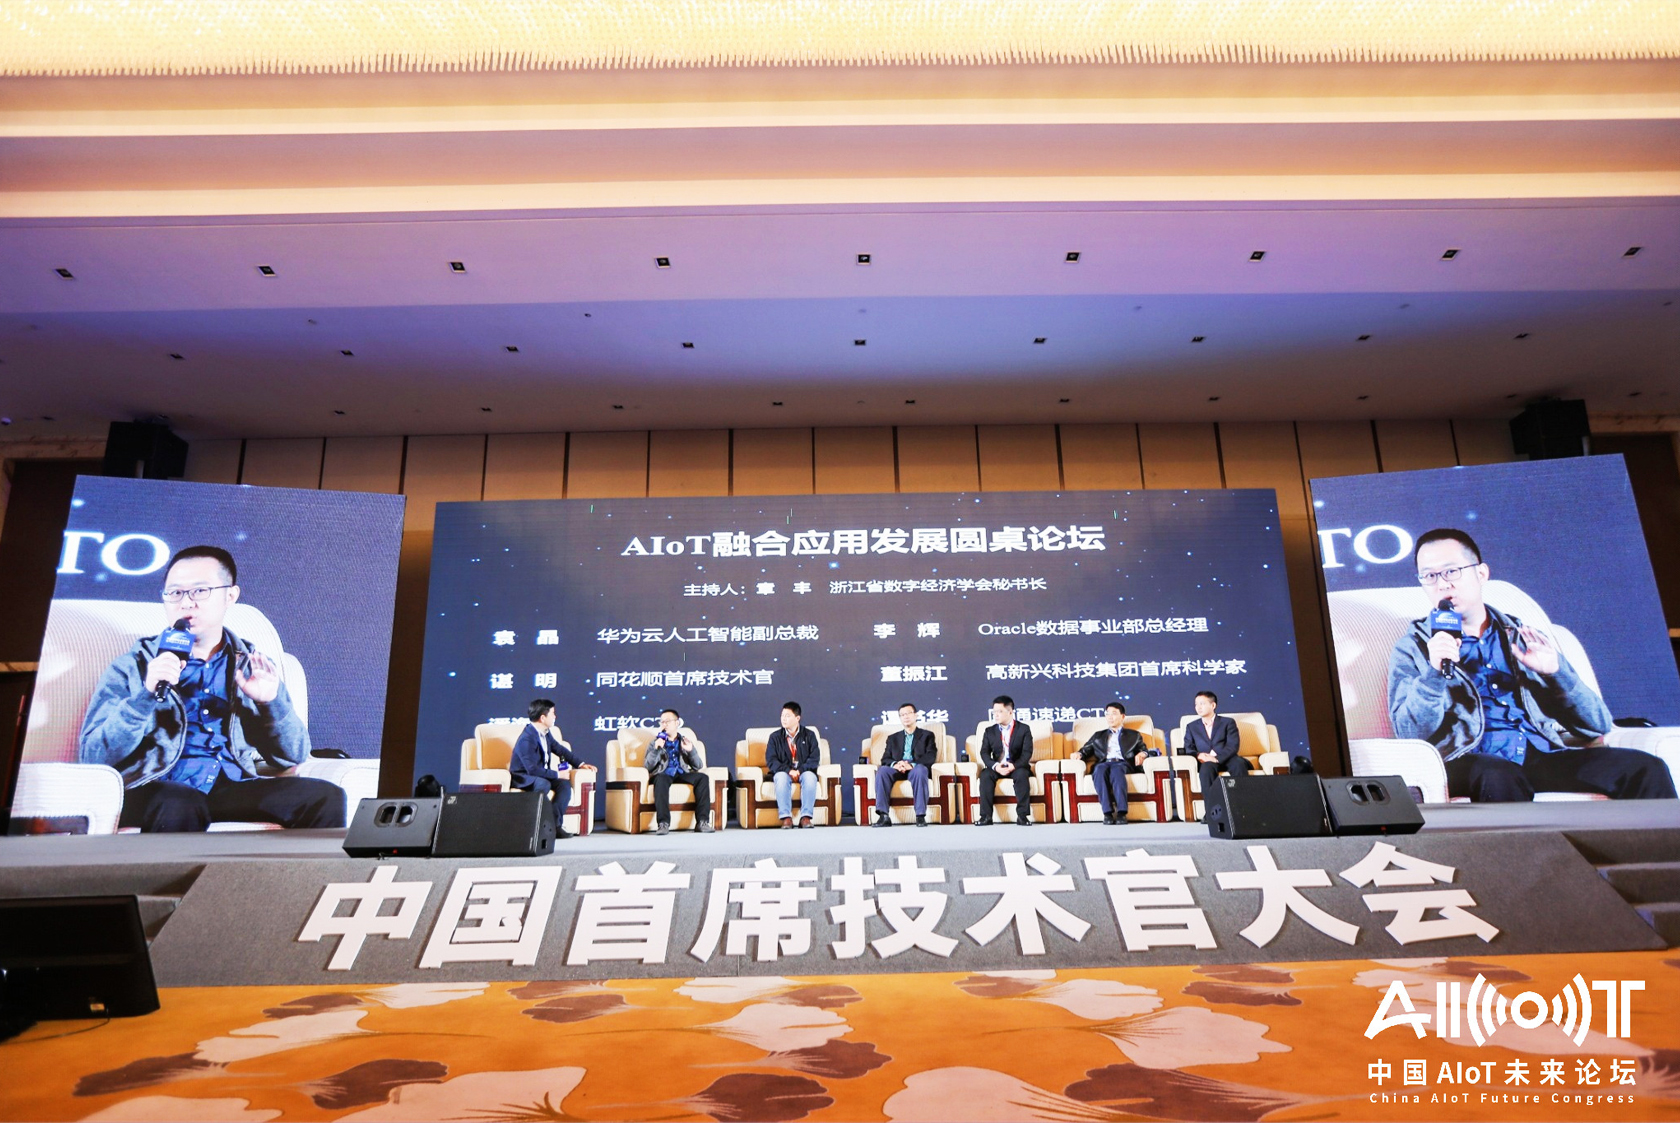 2020中国首席技术官大会暨中国AIoT未来论坛 智能科技企业展览-5